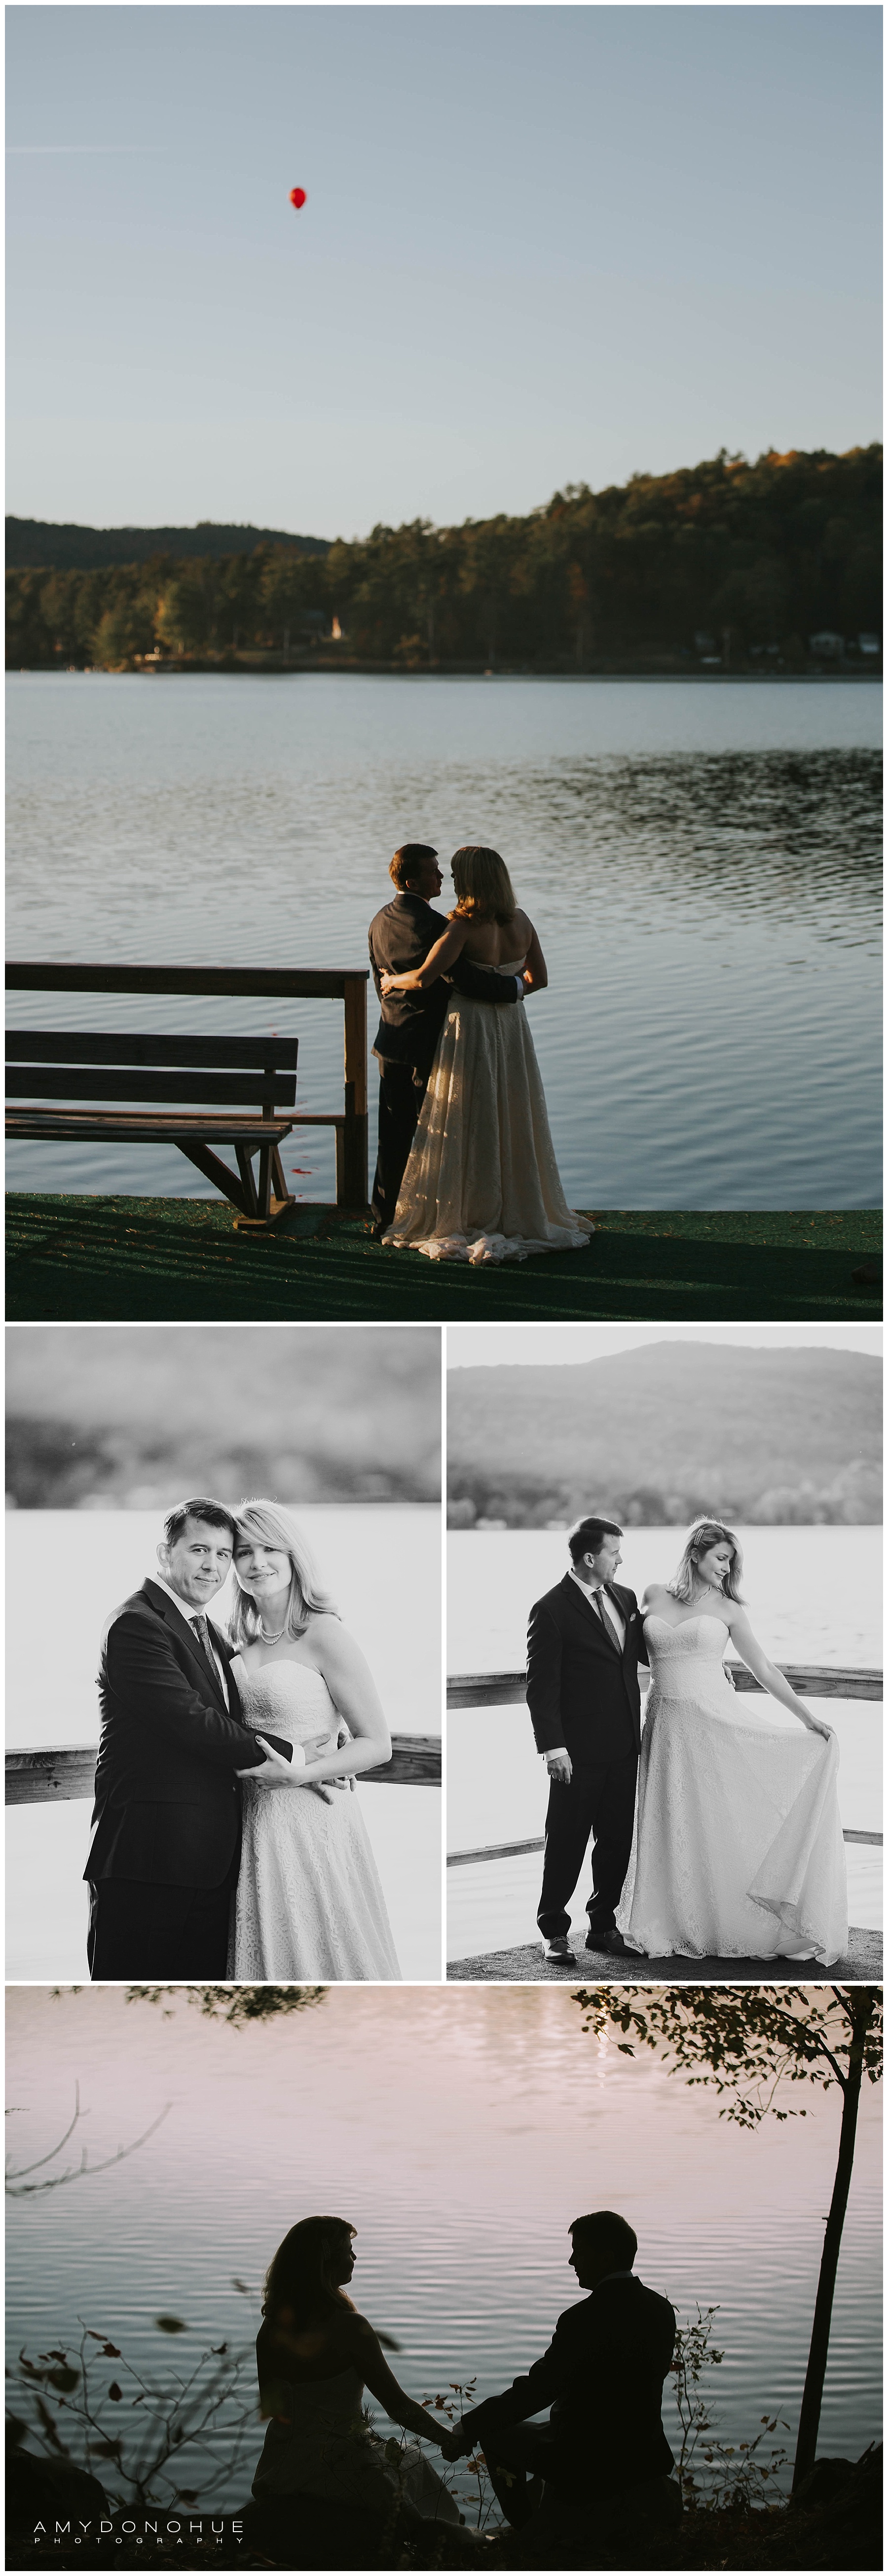 Bridal Portraits | Vermont Destination Photographer | © Amy Donohue Photography